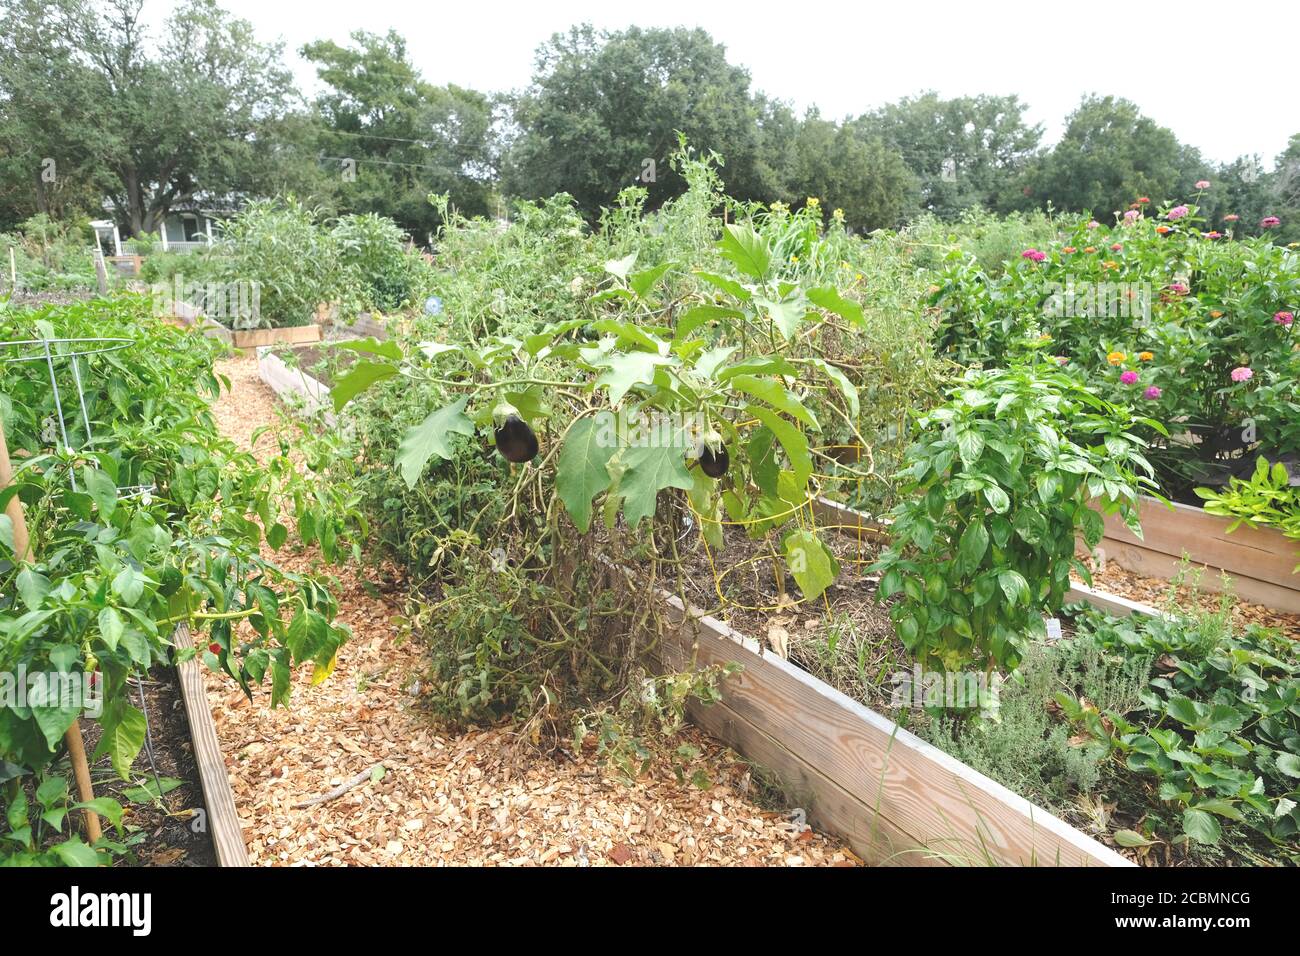 Giardino urbano per pioggia e colture, fiori, tra cui granturco, broccoli, Kale, Peppers, avocadoes, banane, Mints, e altri prodotti Foto Stock